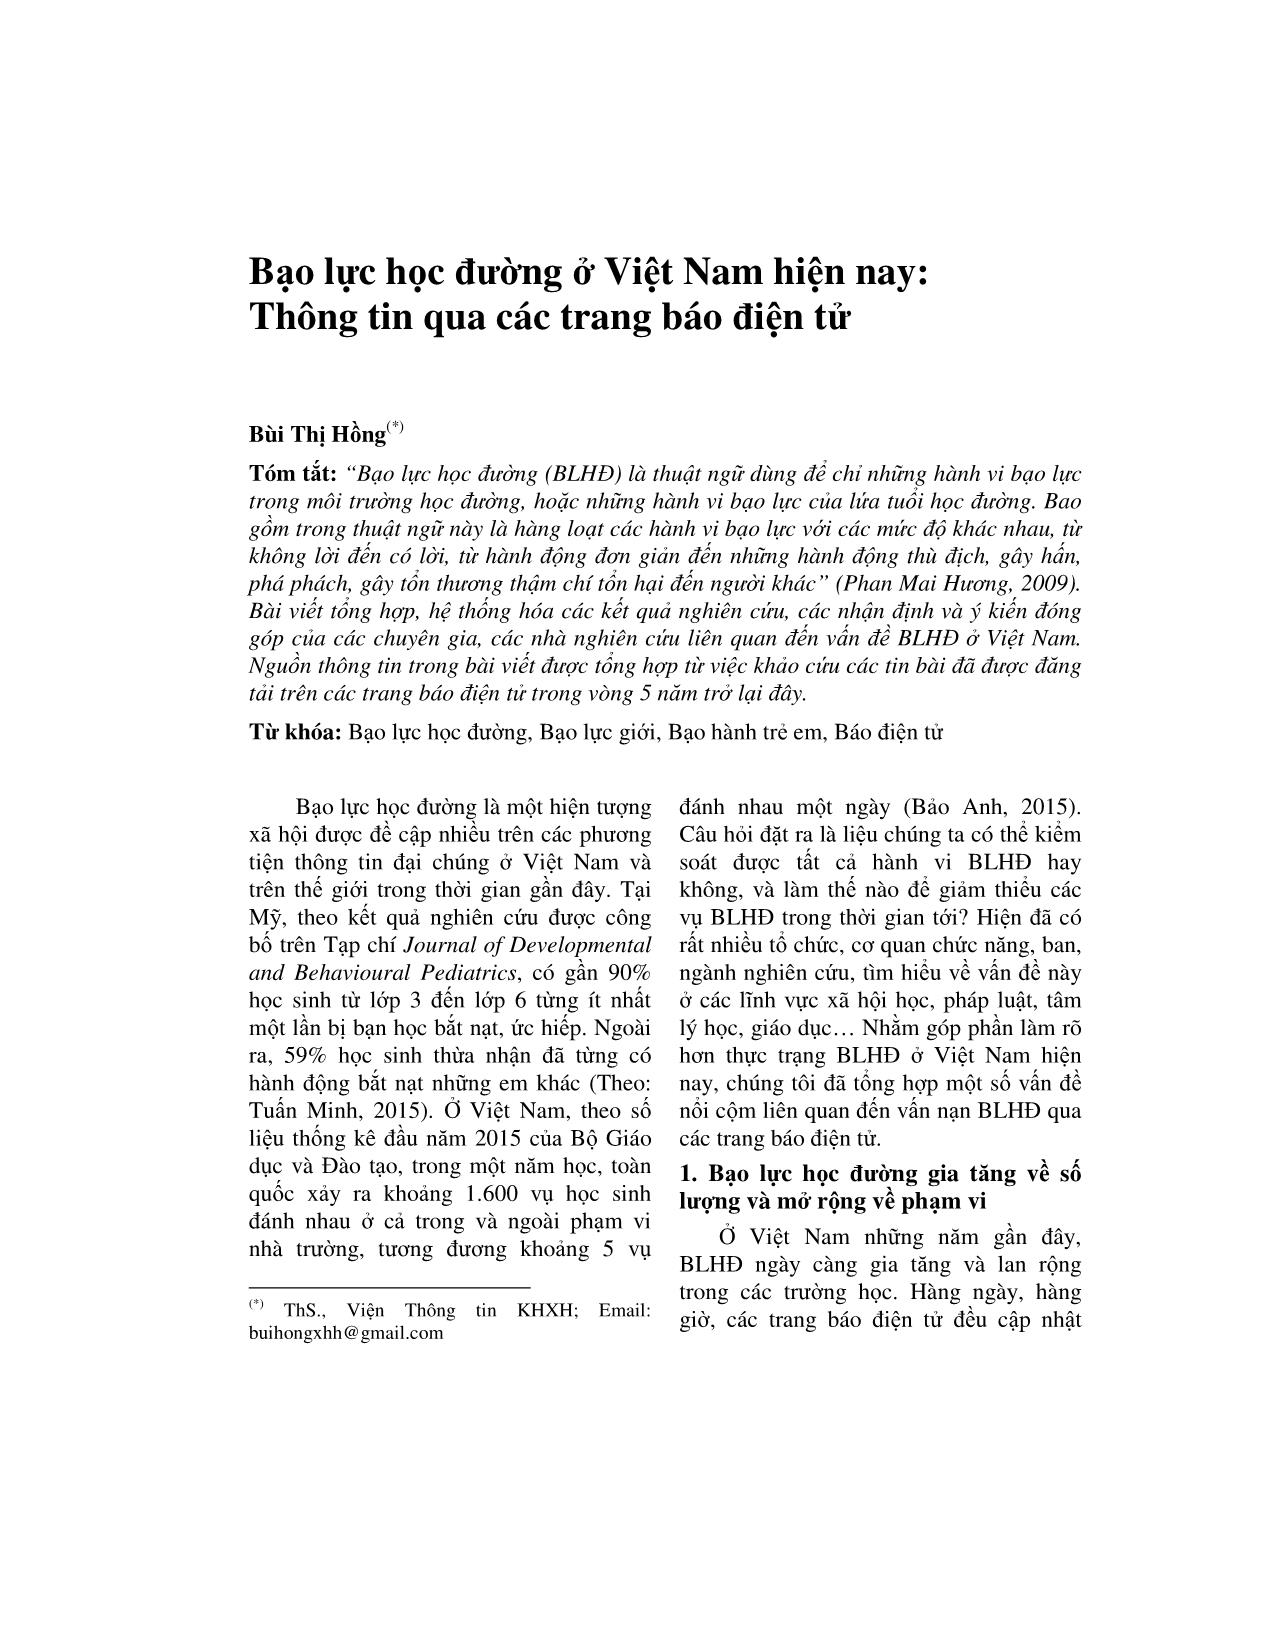 Bạo lực học đường ở Việt Nam hiện nay: Thông tin qua các trang báo điện tử trang 1